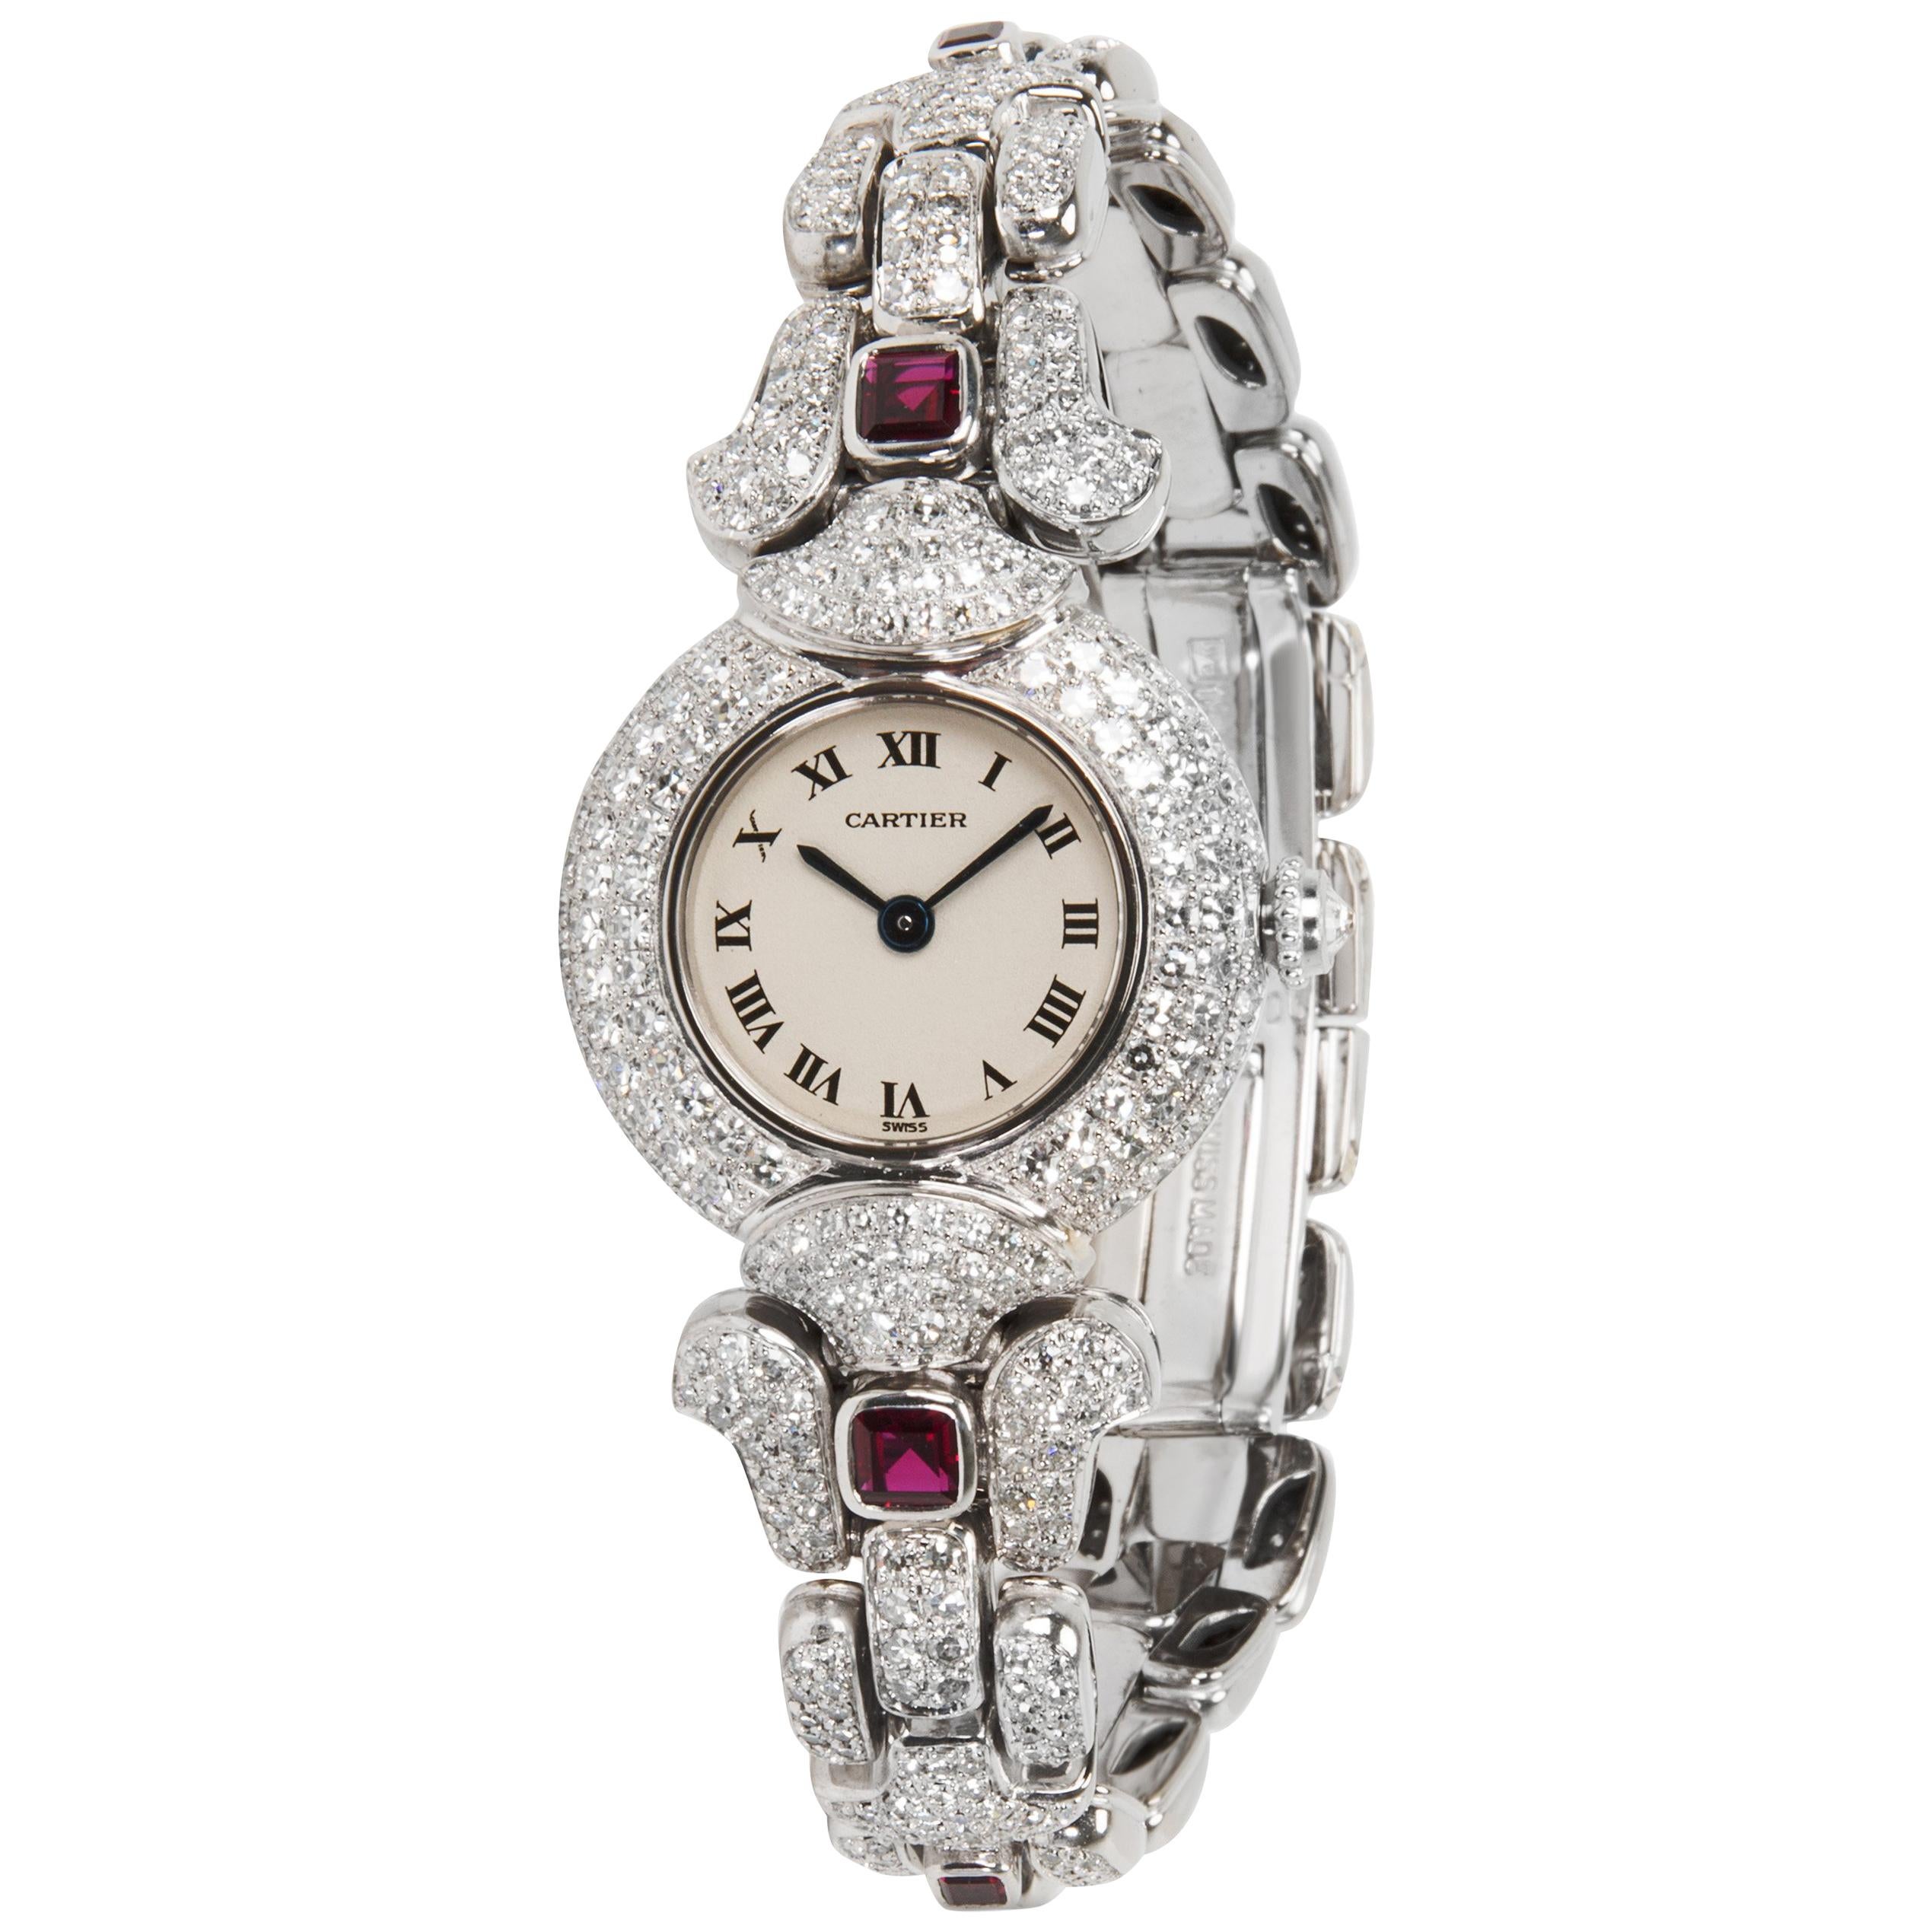 Cartier Colisse 0030 Women's Watch in 18 Karat White Gold